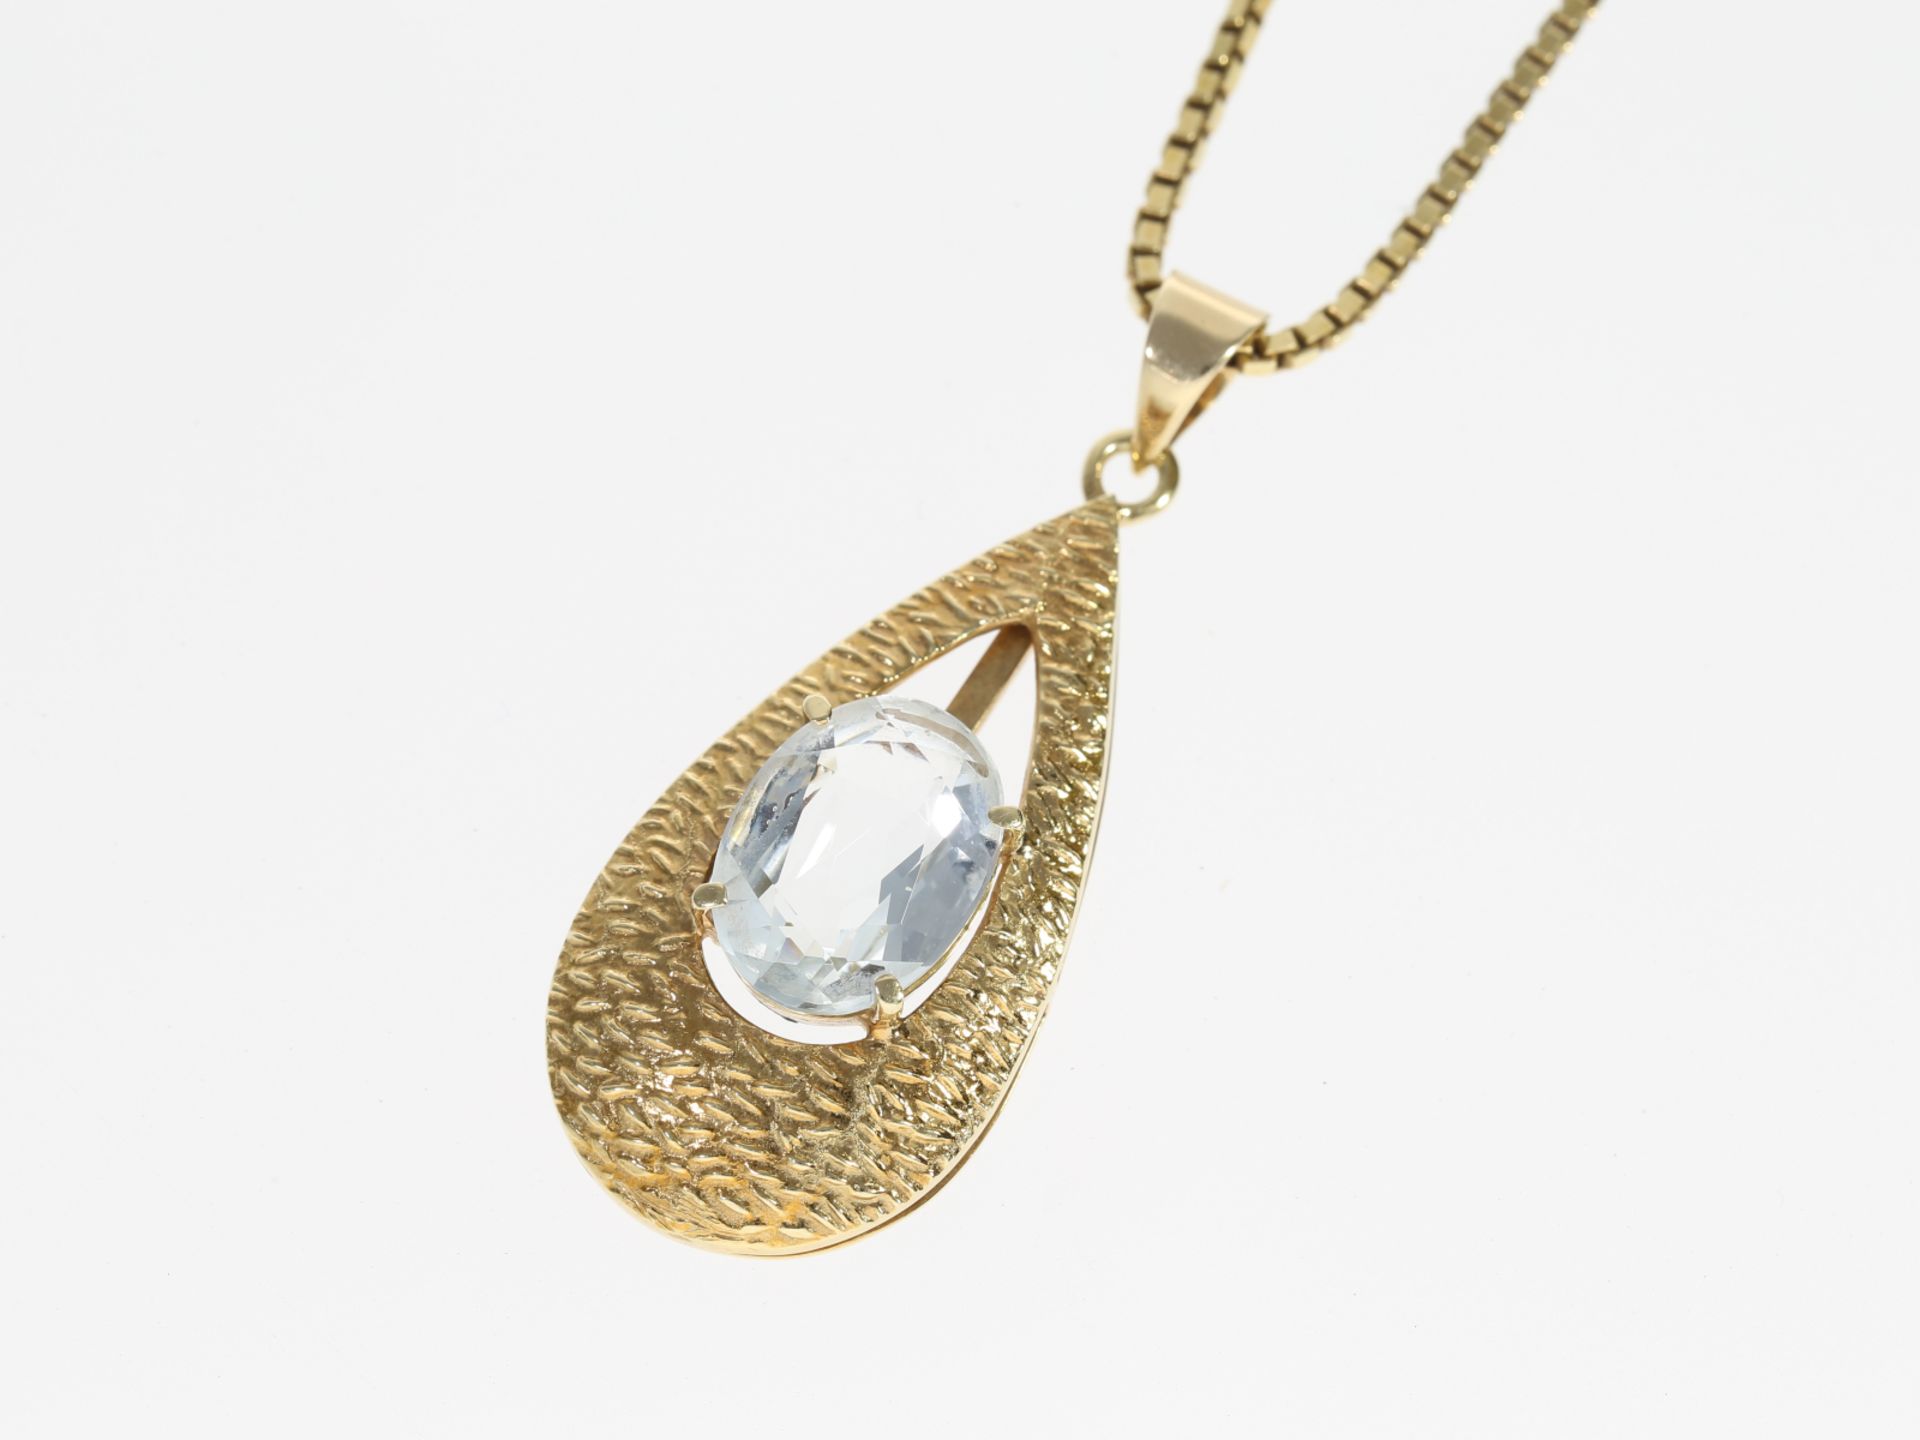 Kette/Collier: Venezianer Goldkette mit Aquamarin-Goldschmiedeanhänger - Bild 3 aus 3